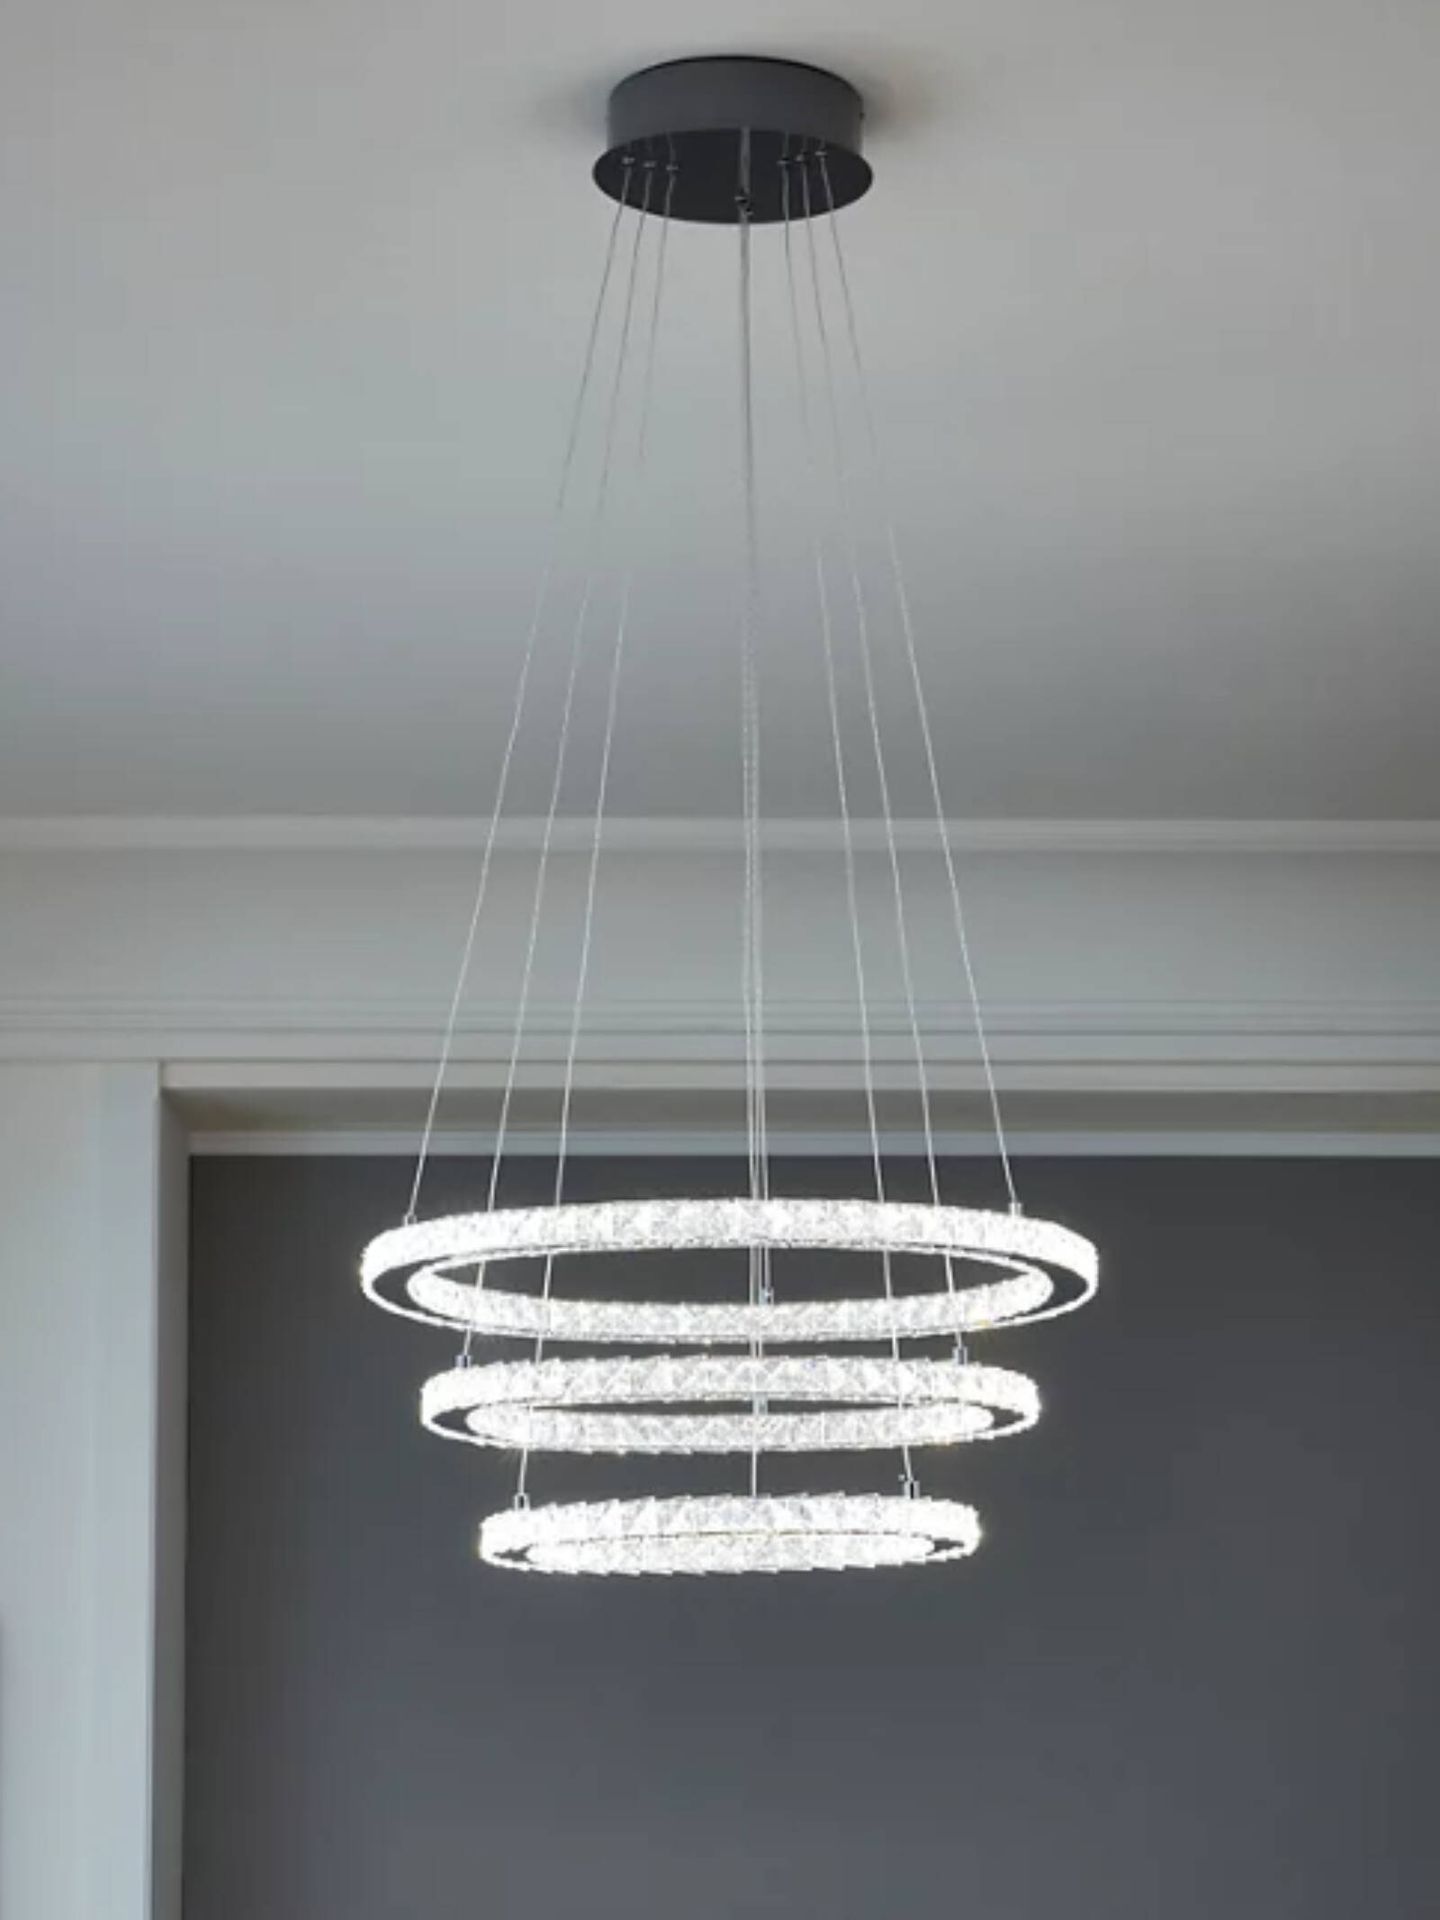 Lámparas de chandelier low cost para dar un toque chic a tu casa. (Cortesía/Leroy Merlin)